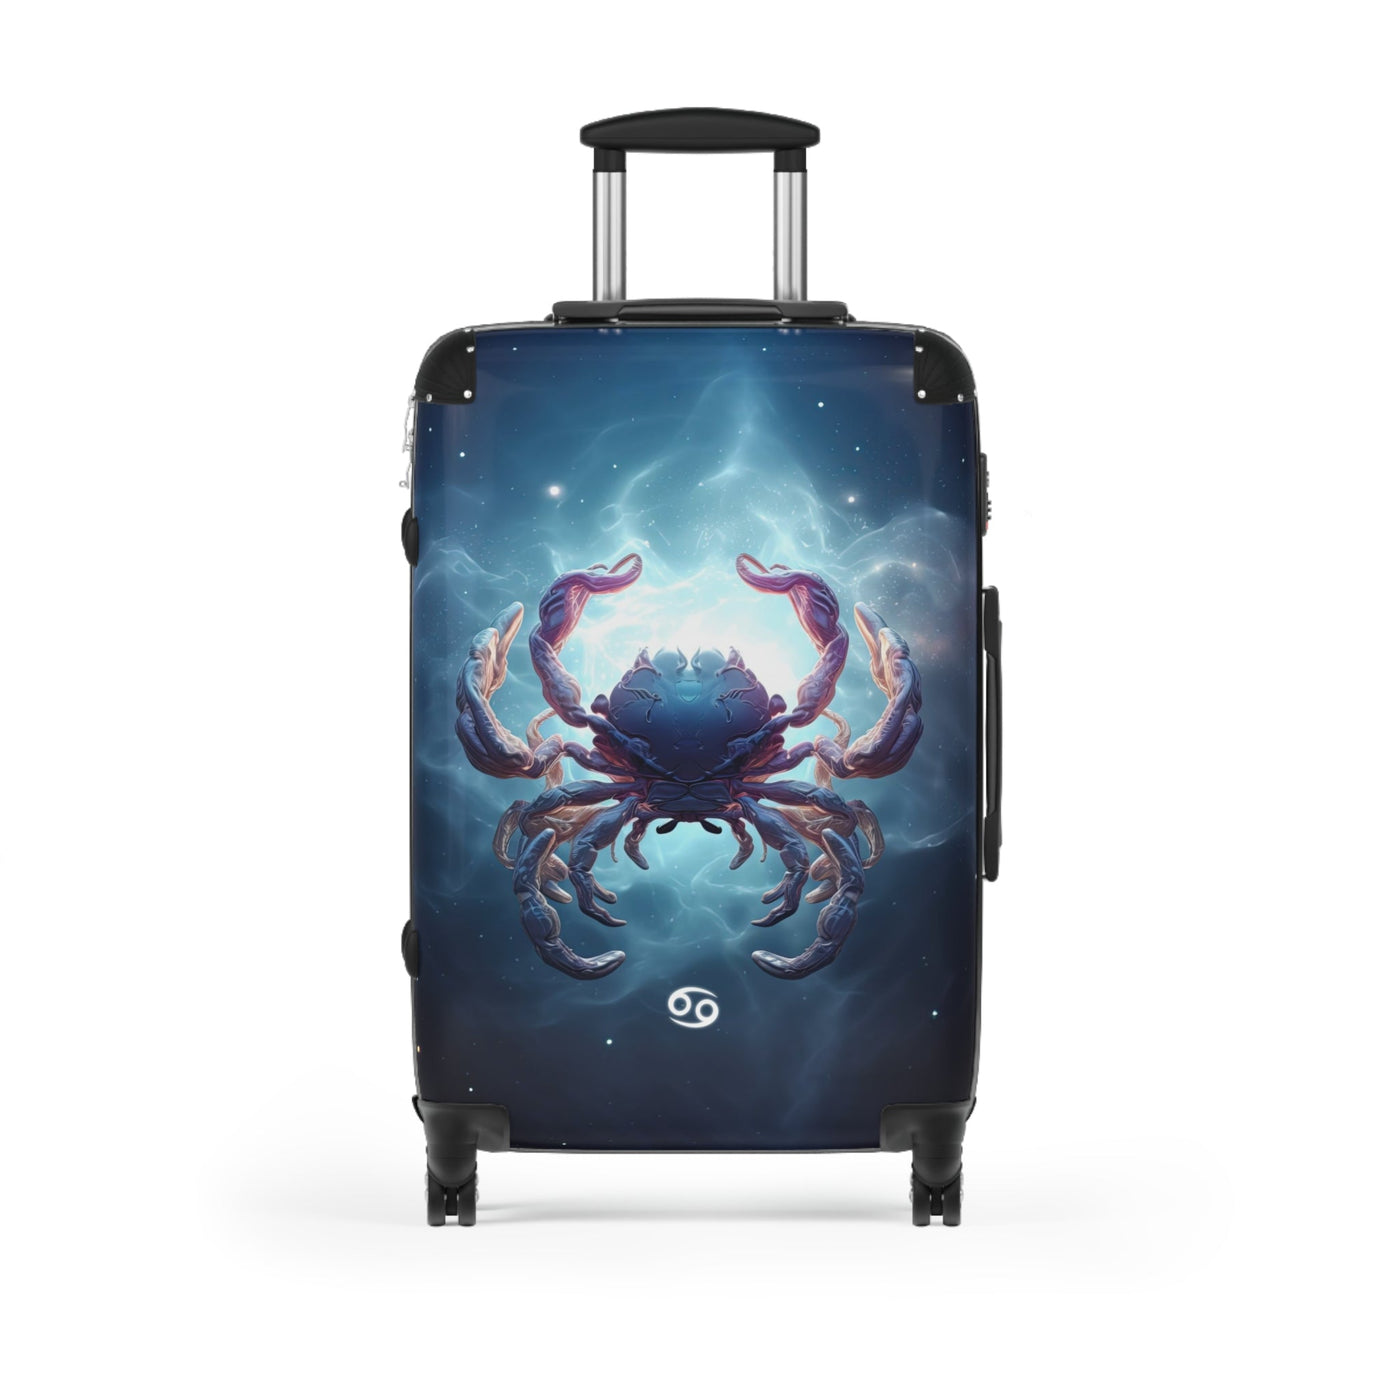 Cancer Zodiac Sign Travel Suitcase Luggage